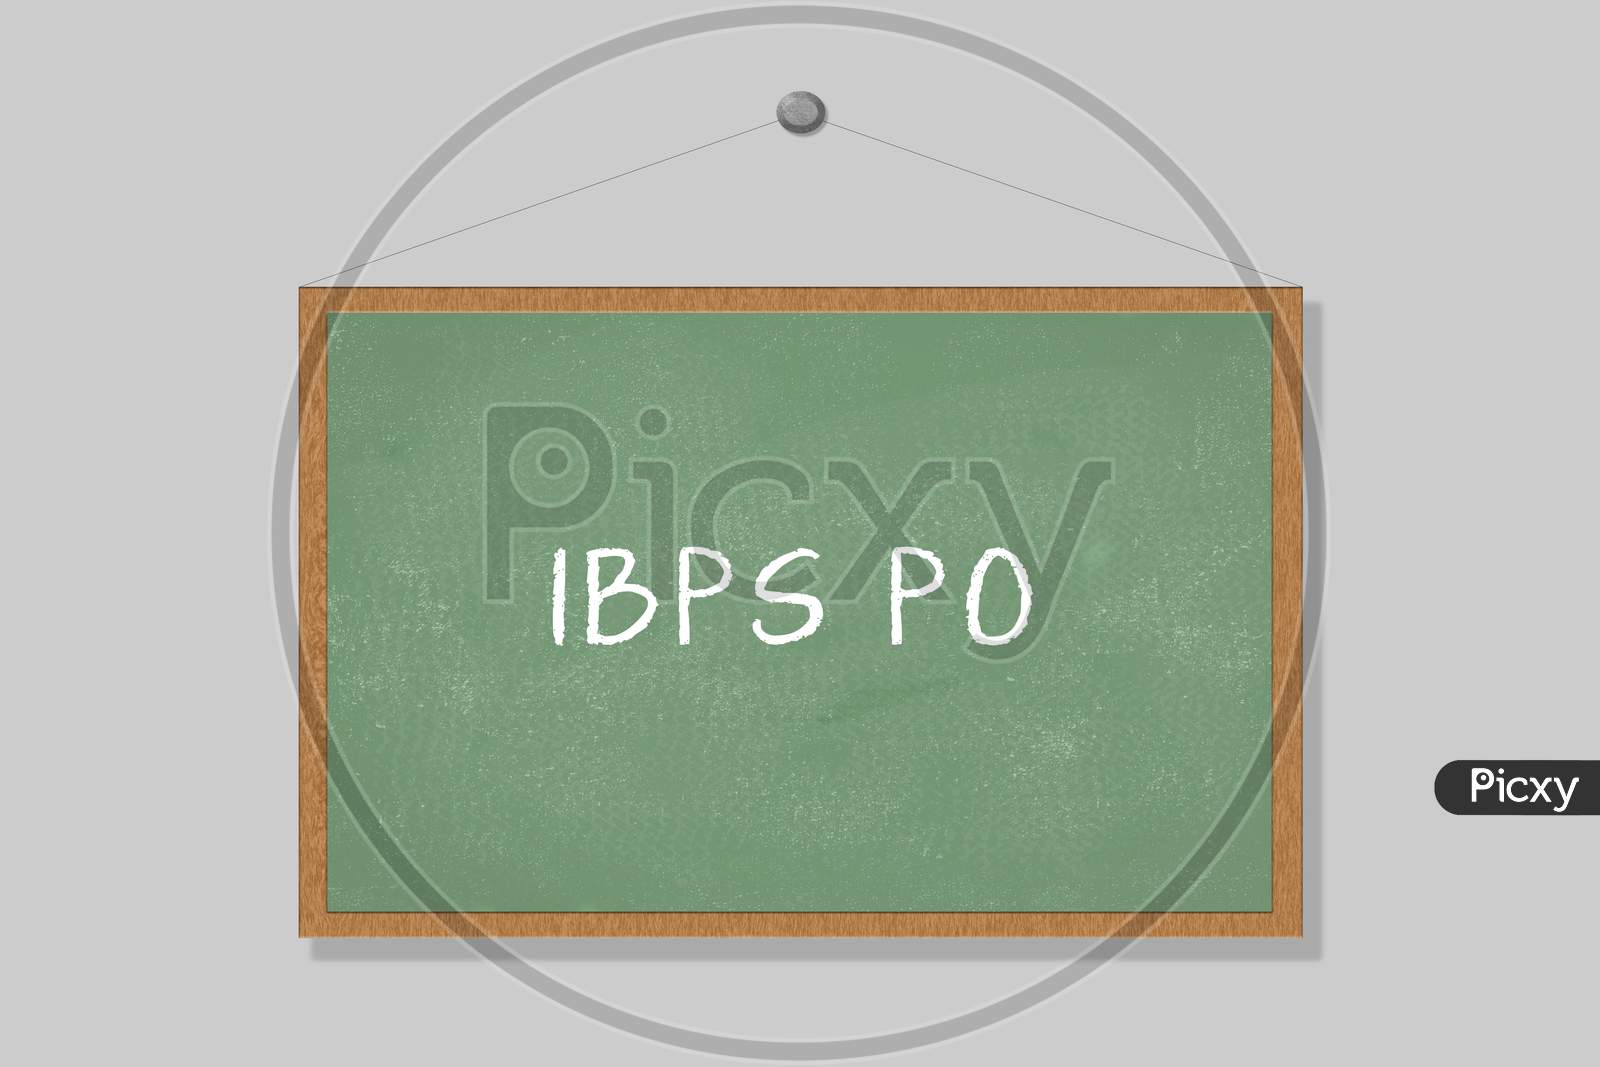 Ibps Po Written On The Green Chalkboard.